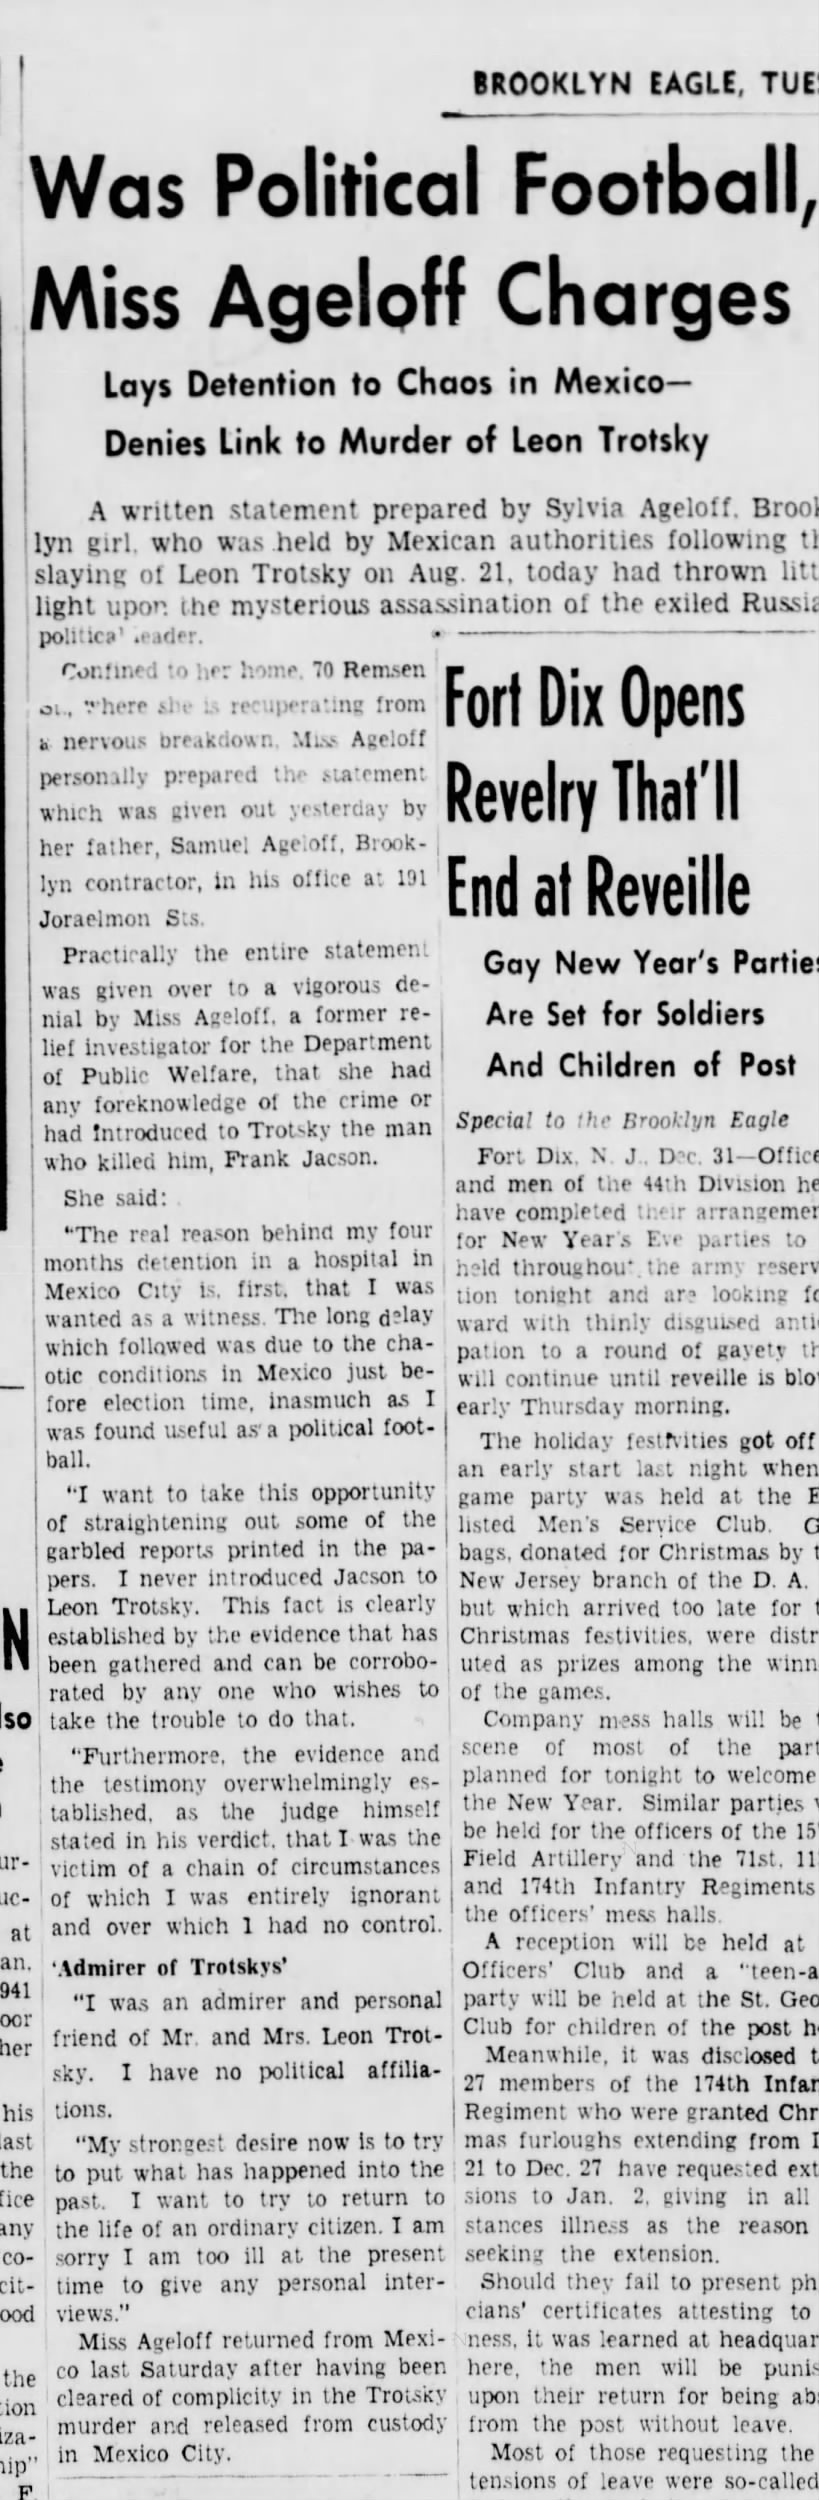 Brooklyn Eagle, Dec 31 1940, p 3